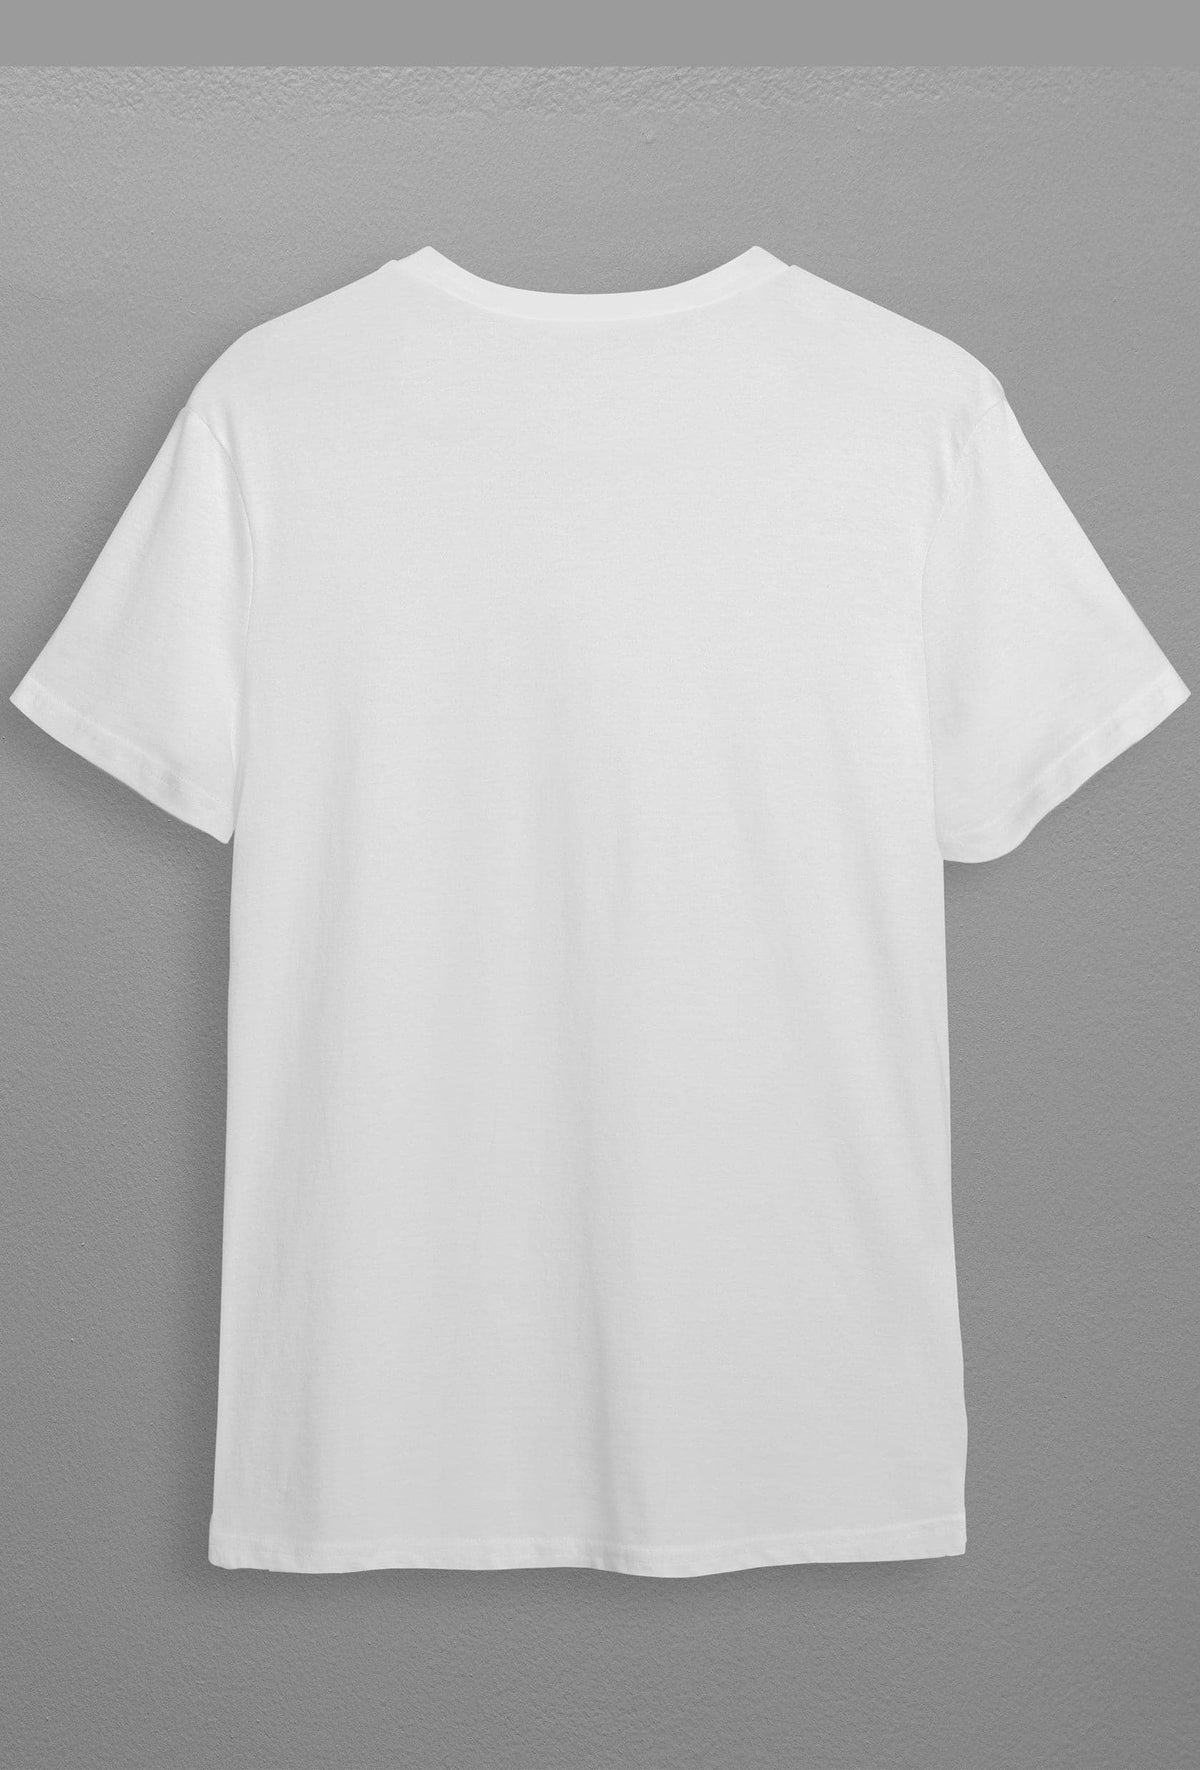 Mr.Morphins  Unisex T-Shirt